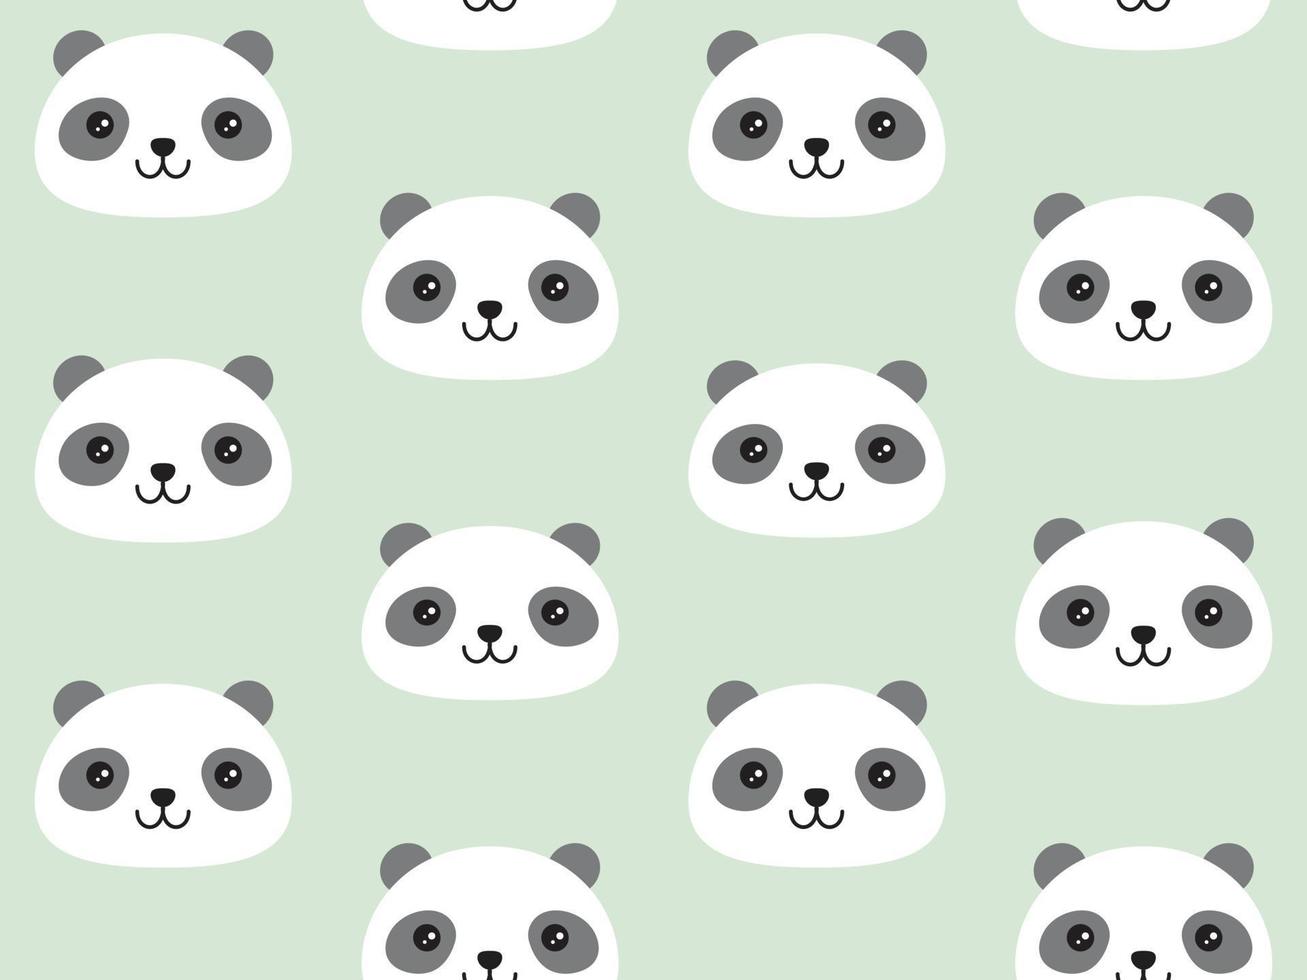 padrão de panda fofo no estilo kawaii fofo. sem costura de fundo vector em estilo gráfico plano.